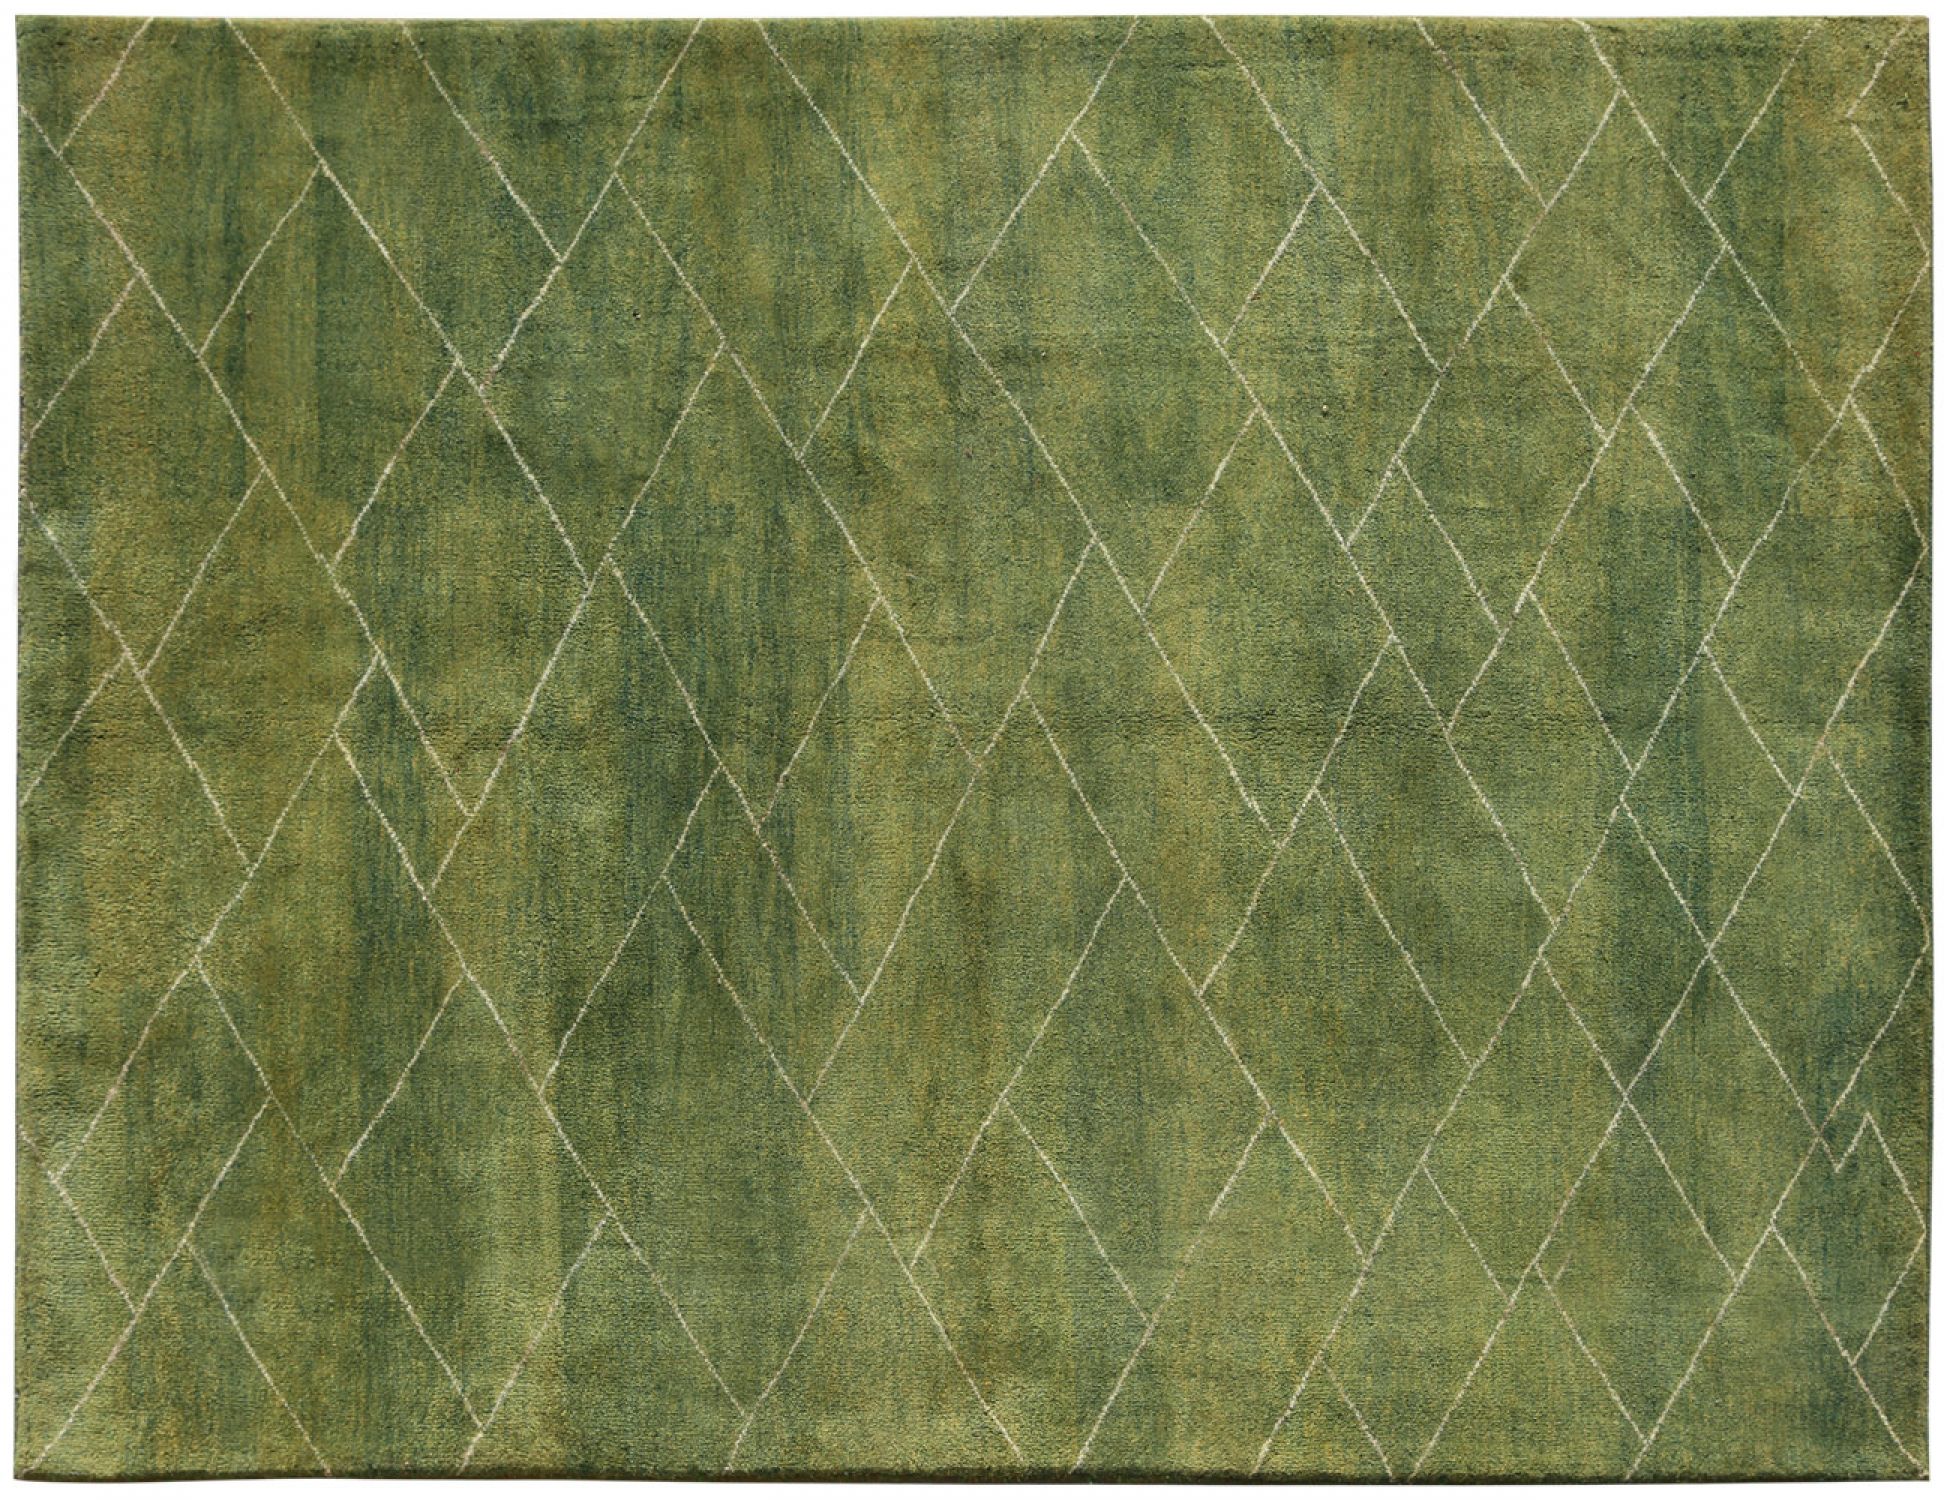 ΠΕΡΣΙΚΑ Luribuffs  Πράσινο <br/>296 x 194 cm